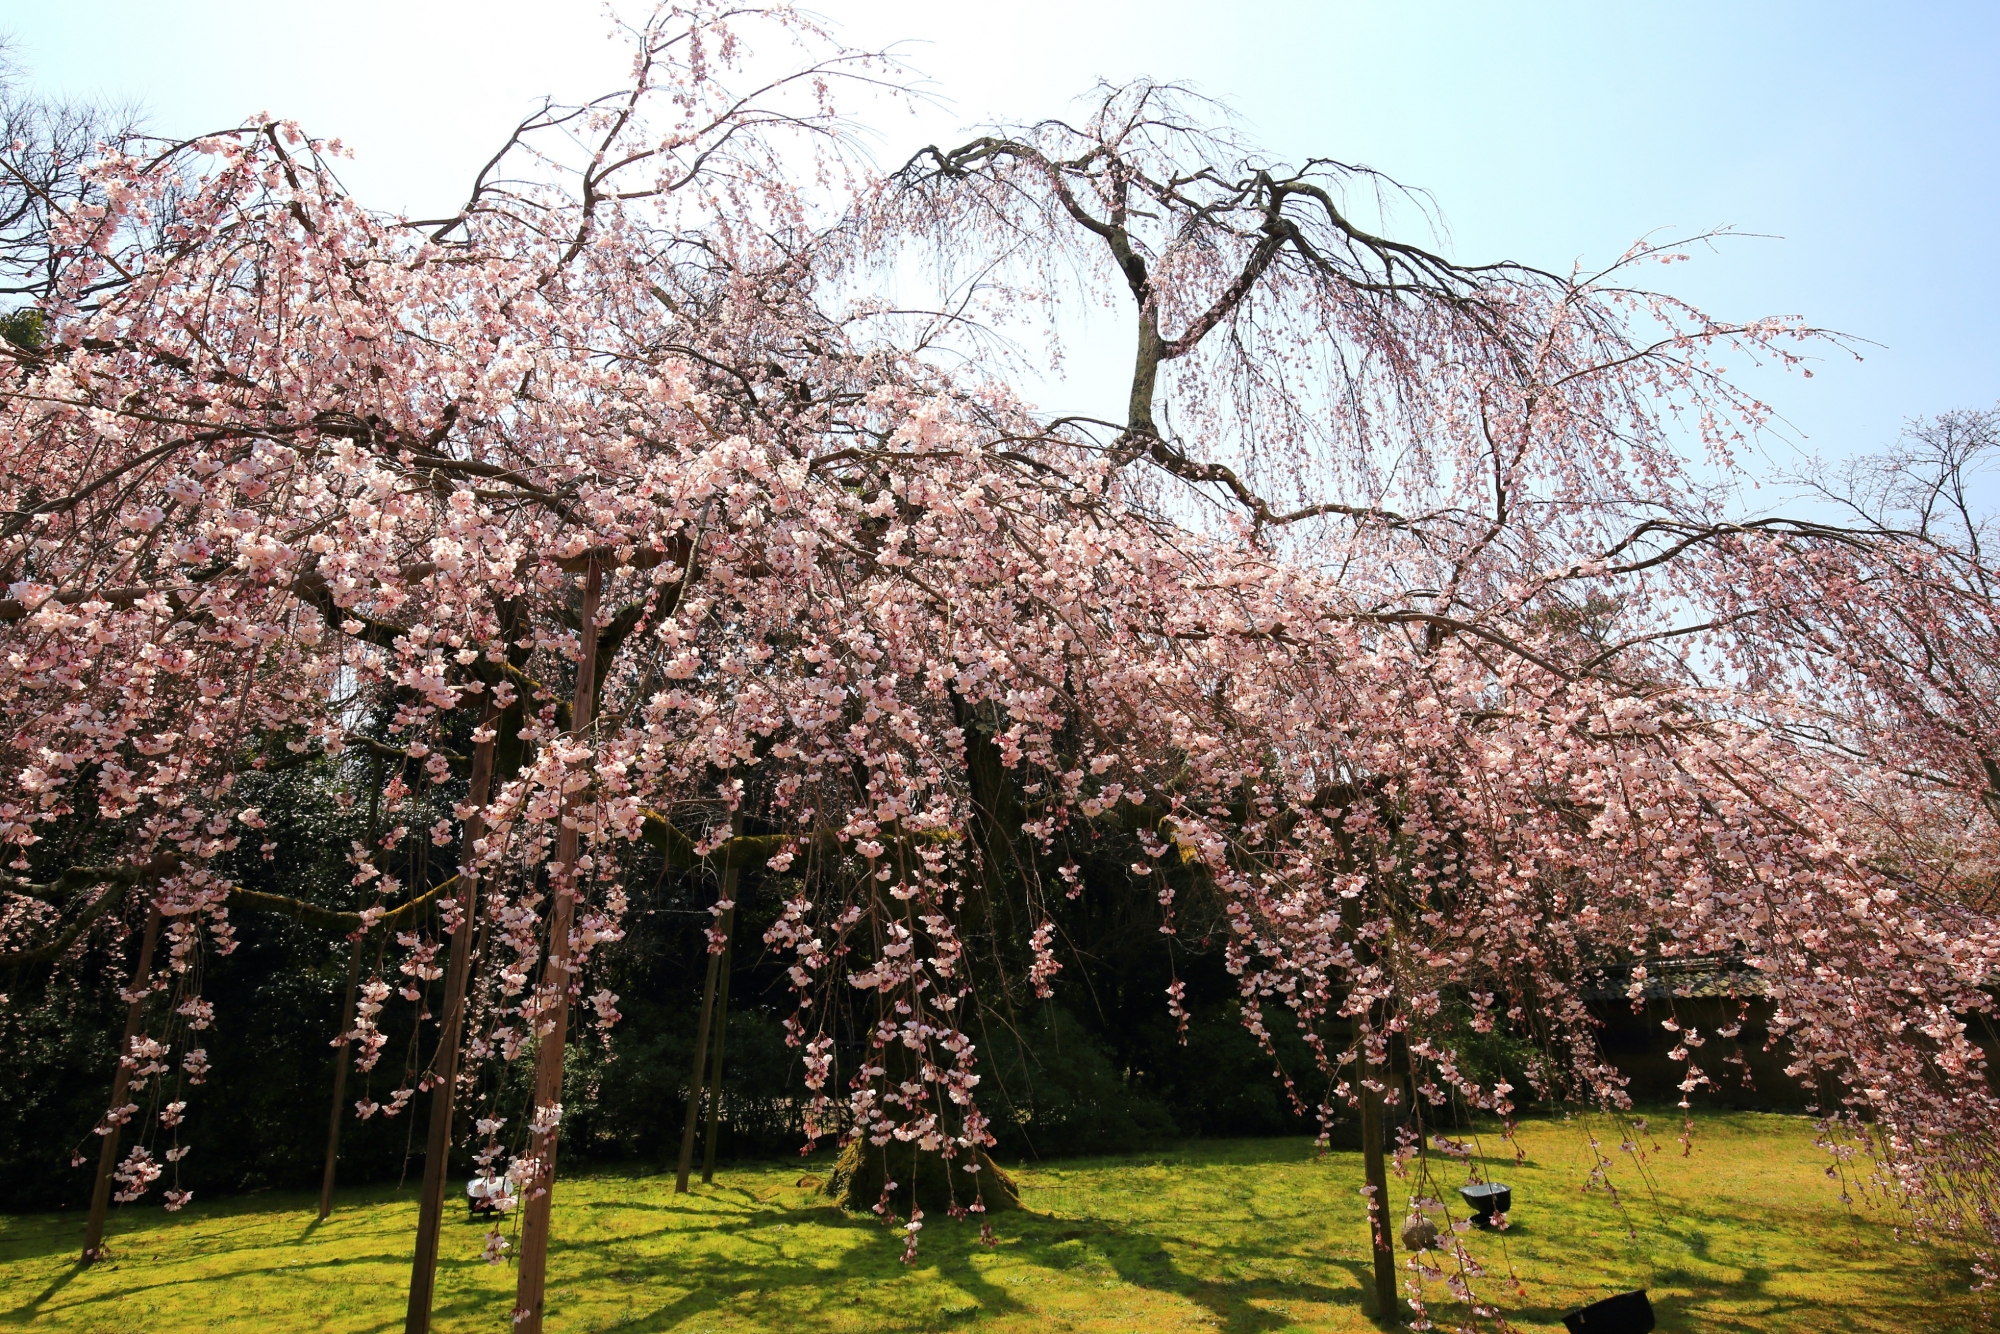 大きく枝を伸ばして優雅に咲き誇るしだれ桜